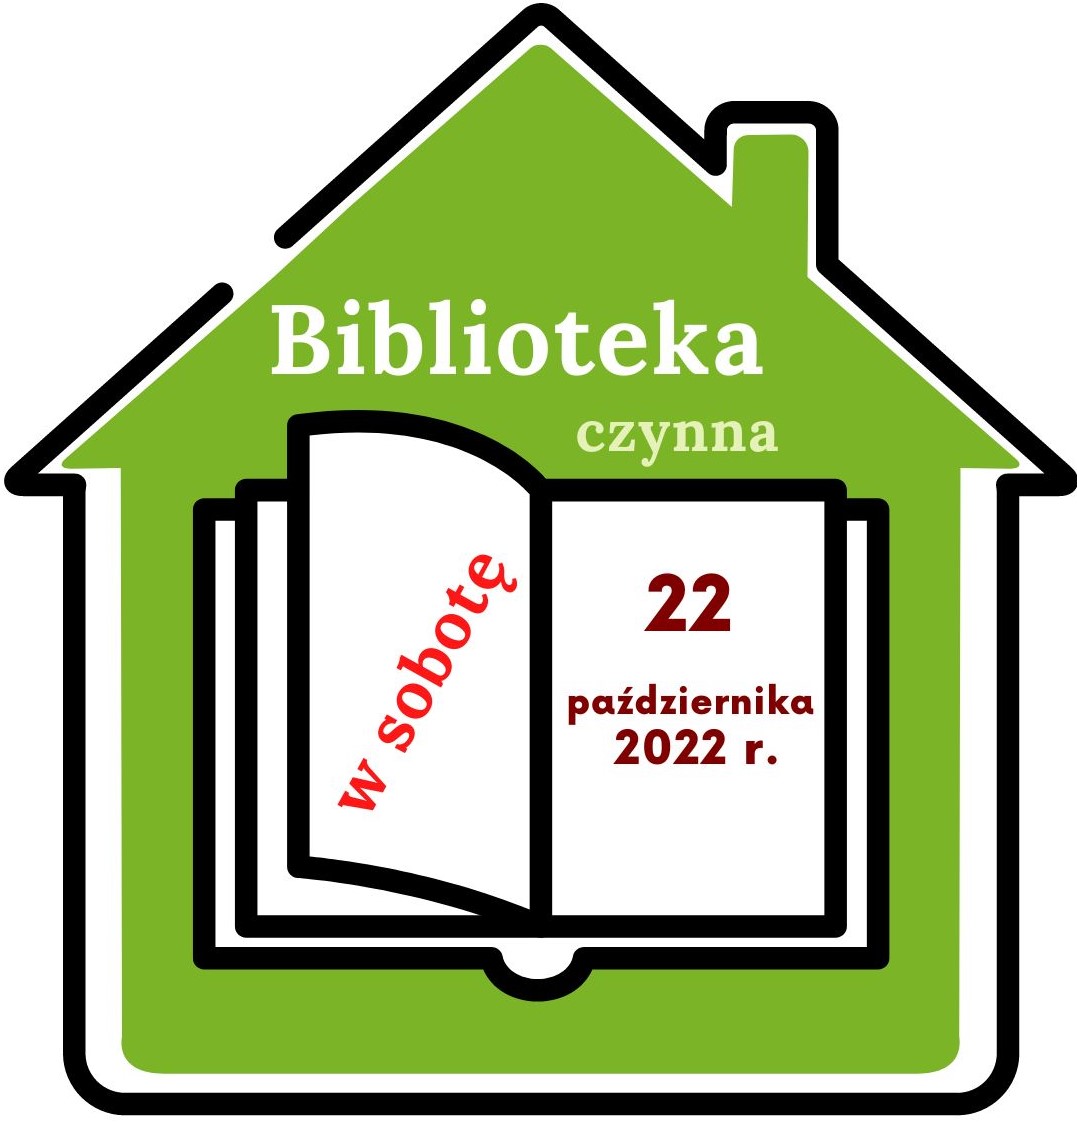 Plakat informujący, że biblioteka będzie czynna w sobotę 22 pażdziernika 2022 r.